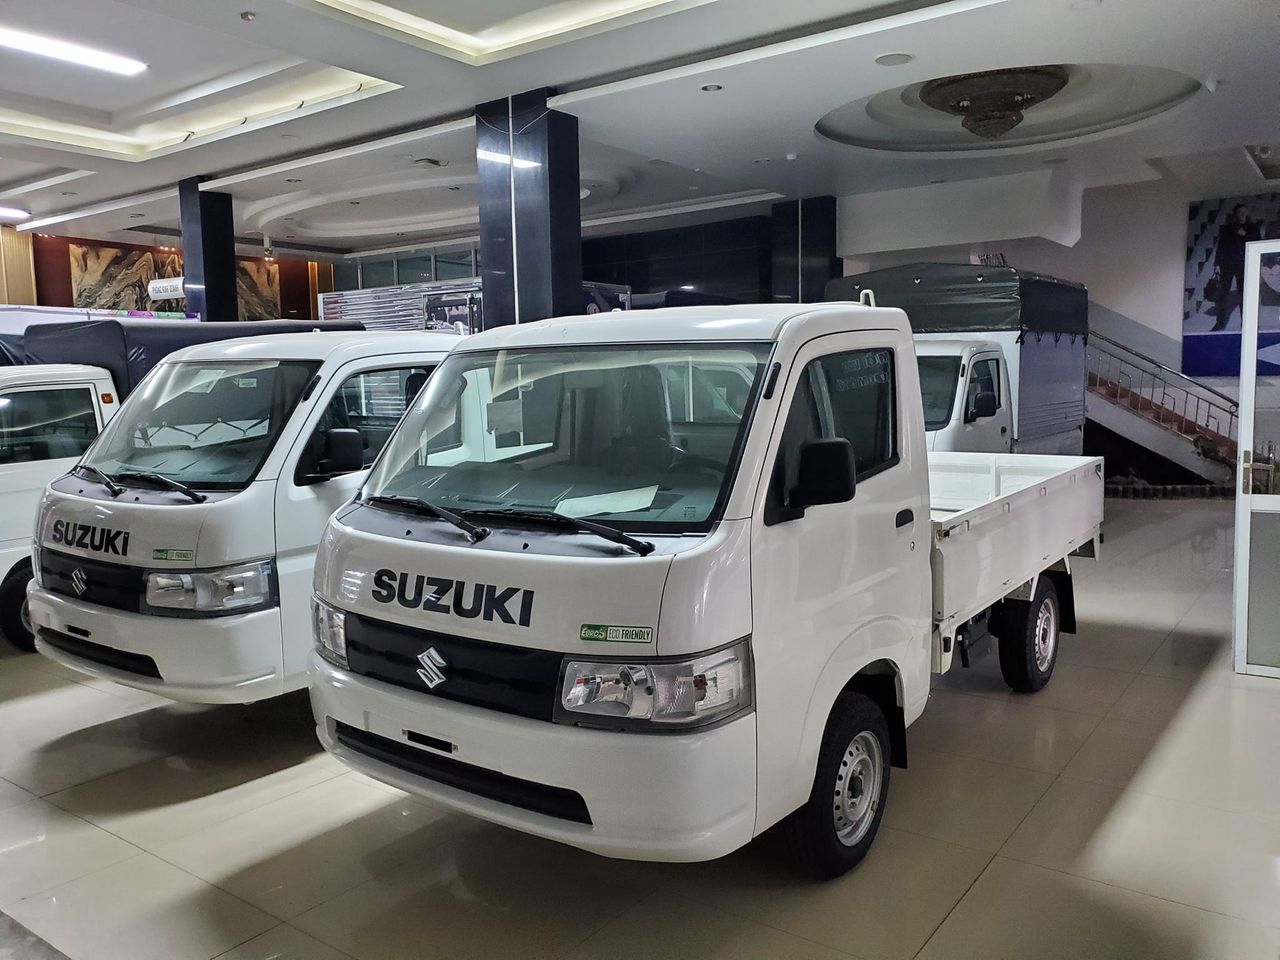 TƯ VẤN : Thay lốp xe Suzuki Carry Pro ở Trảng Bom, Đồng Nai.